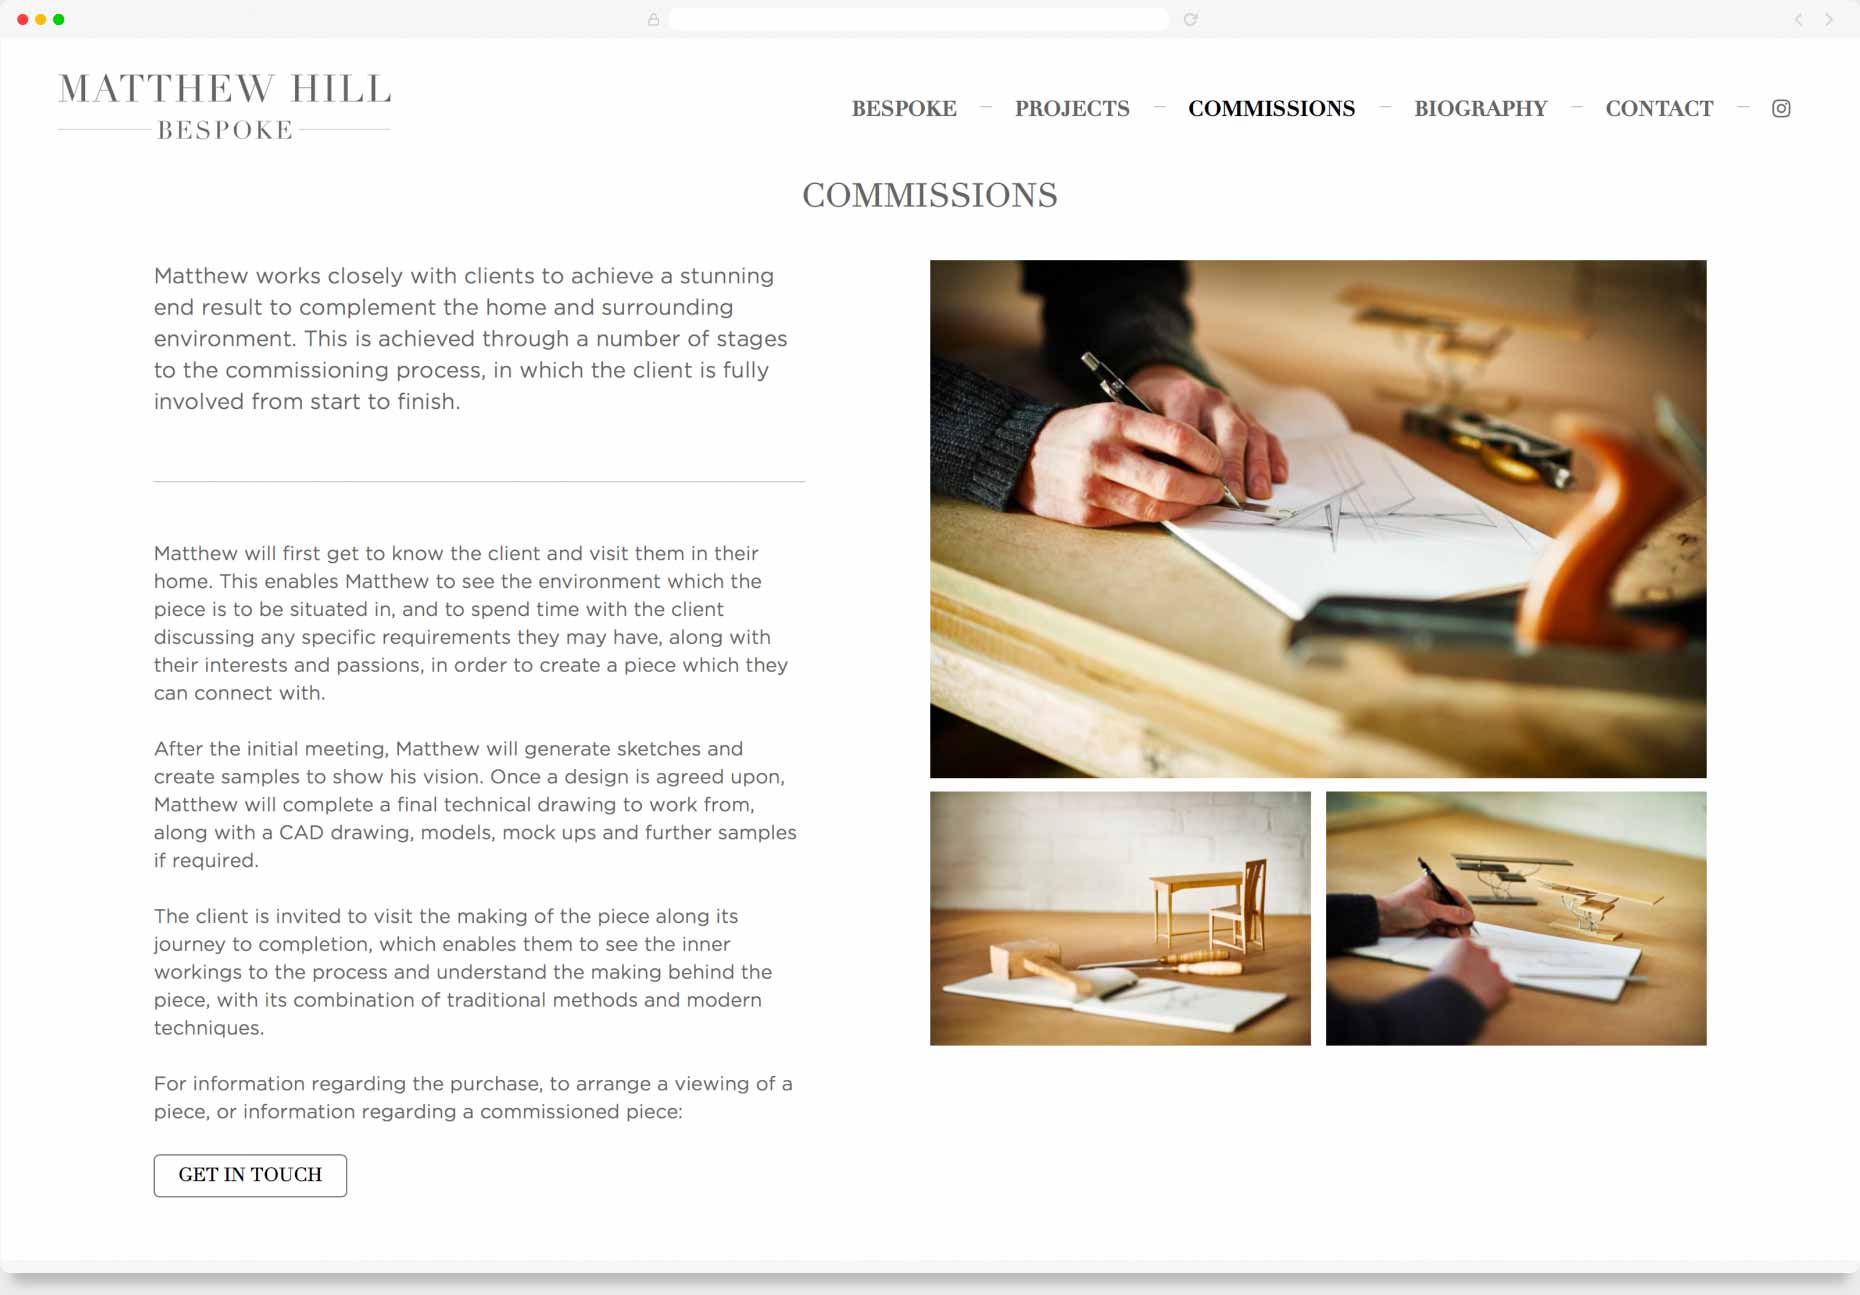 Website Design & Development - Matthew Hill Bespoke, Hertfordshire